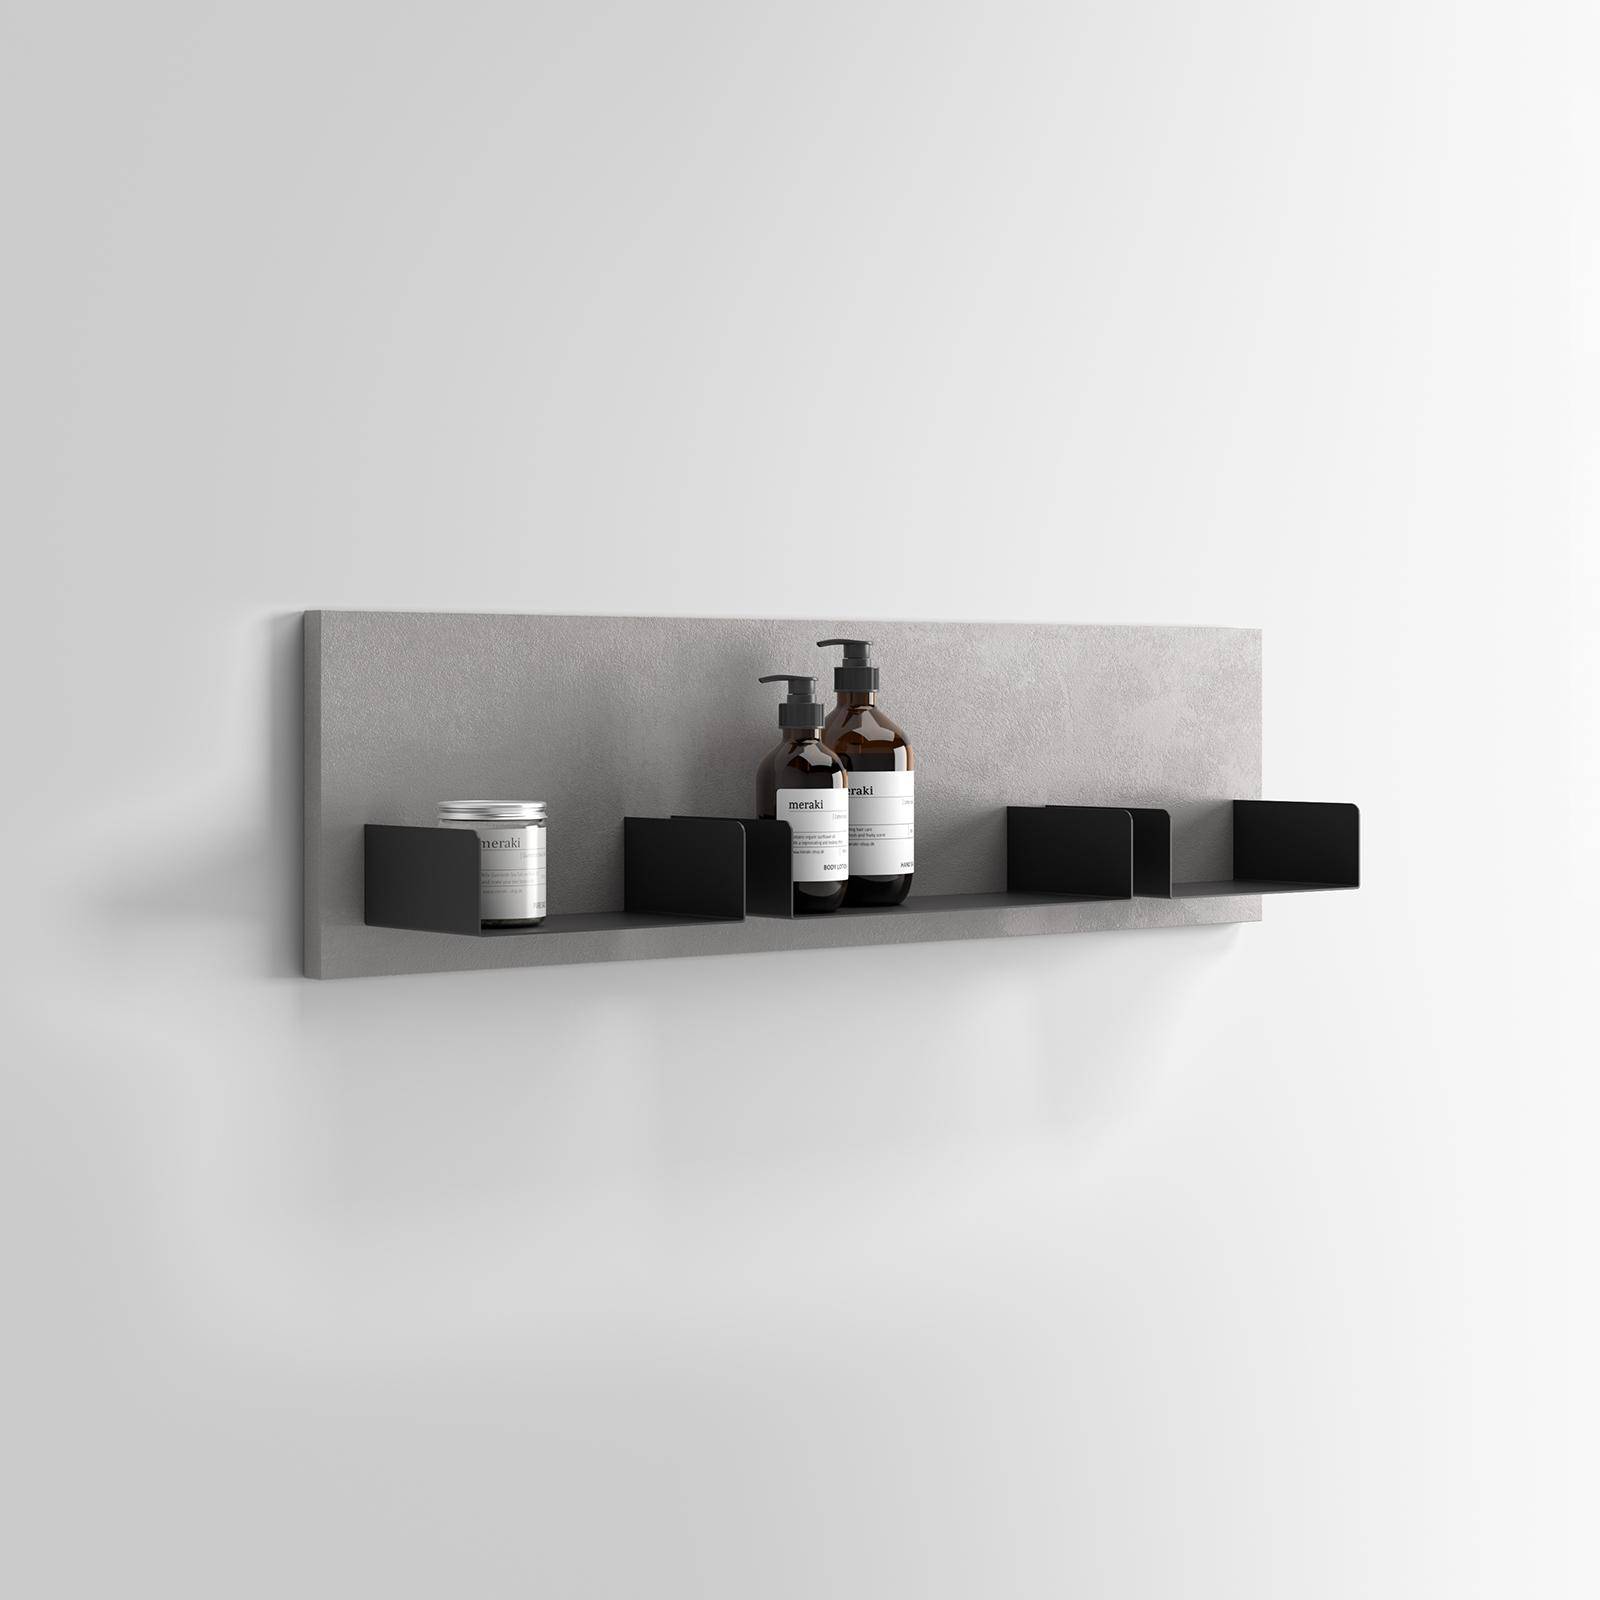 Boiserie 50x60 cm in legno grigio lima con 4 mensole in metallo nero opaco